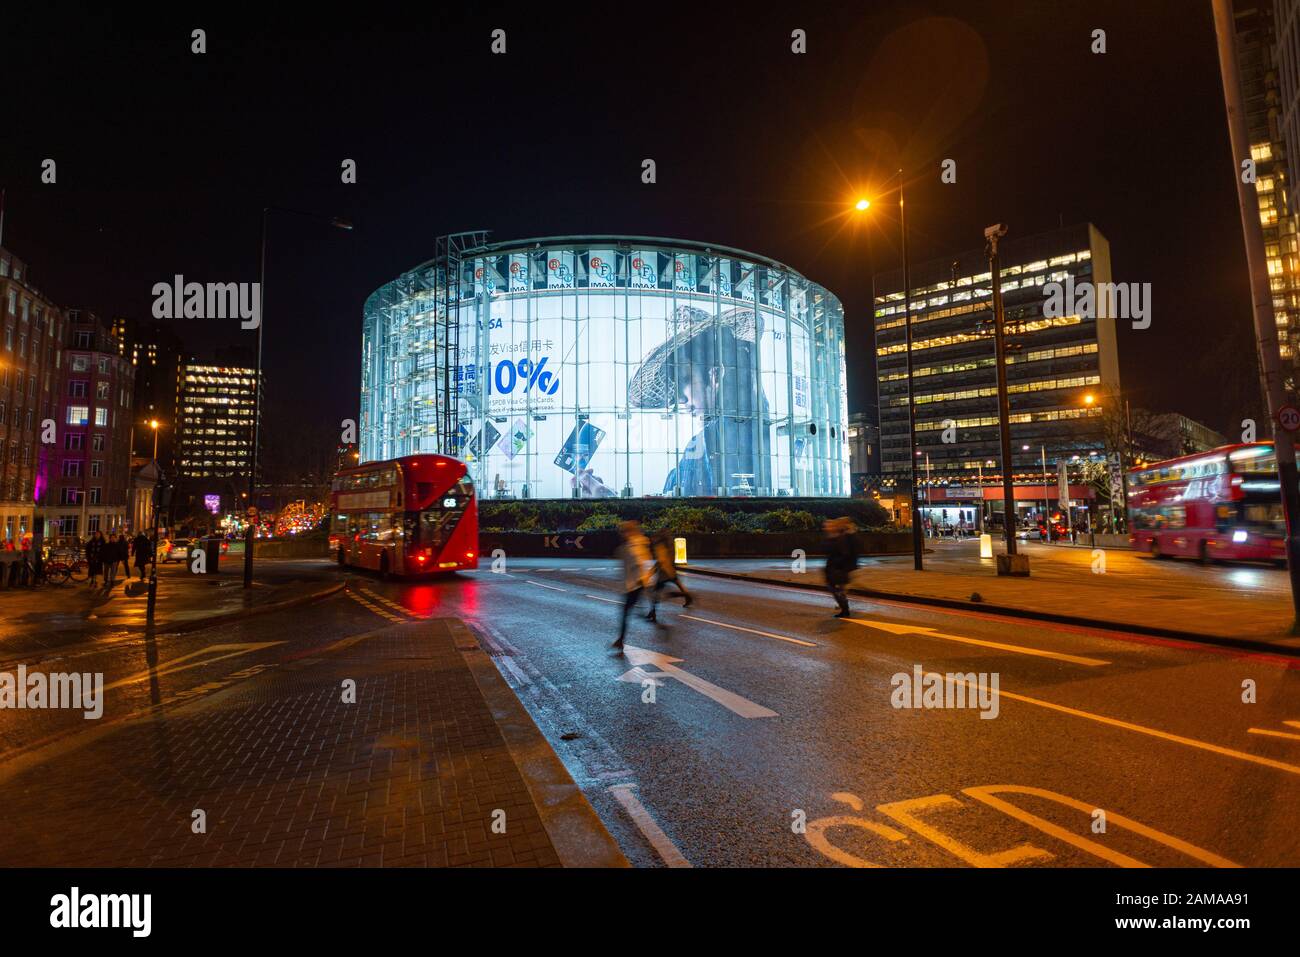 Cinéma Odéon BFI Imax la nuit avec un bus rouge et des piétons, Waterloo, Londres Banque D'Images